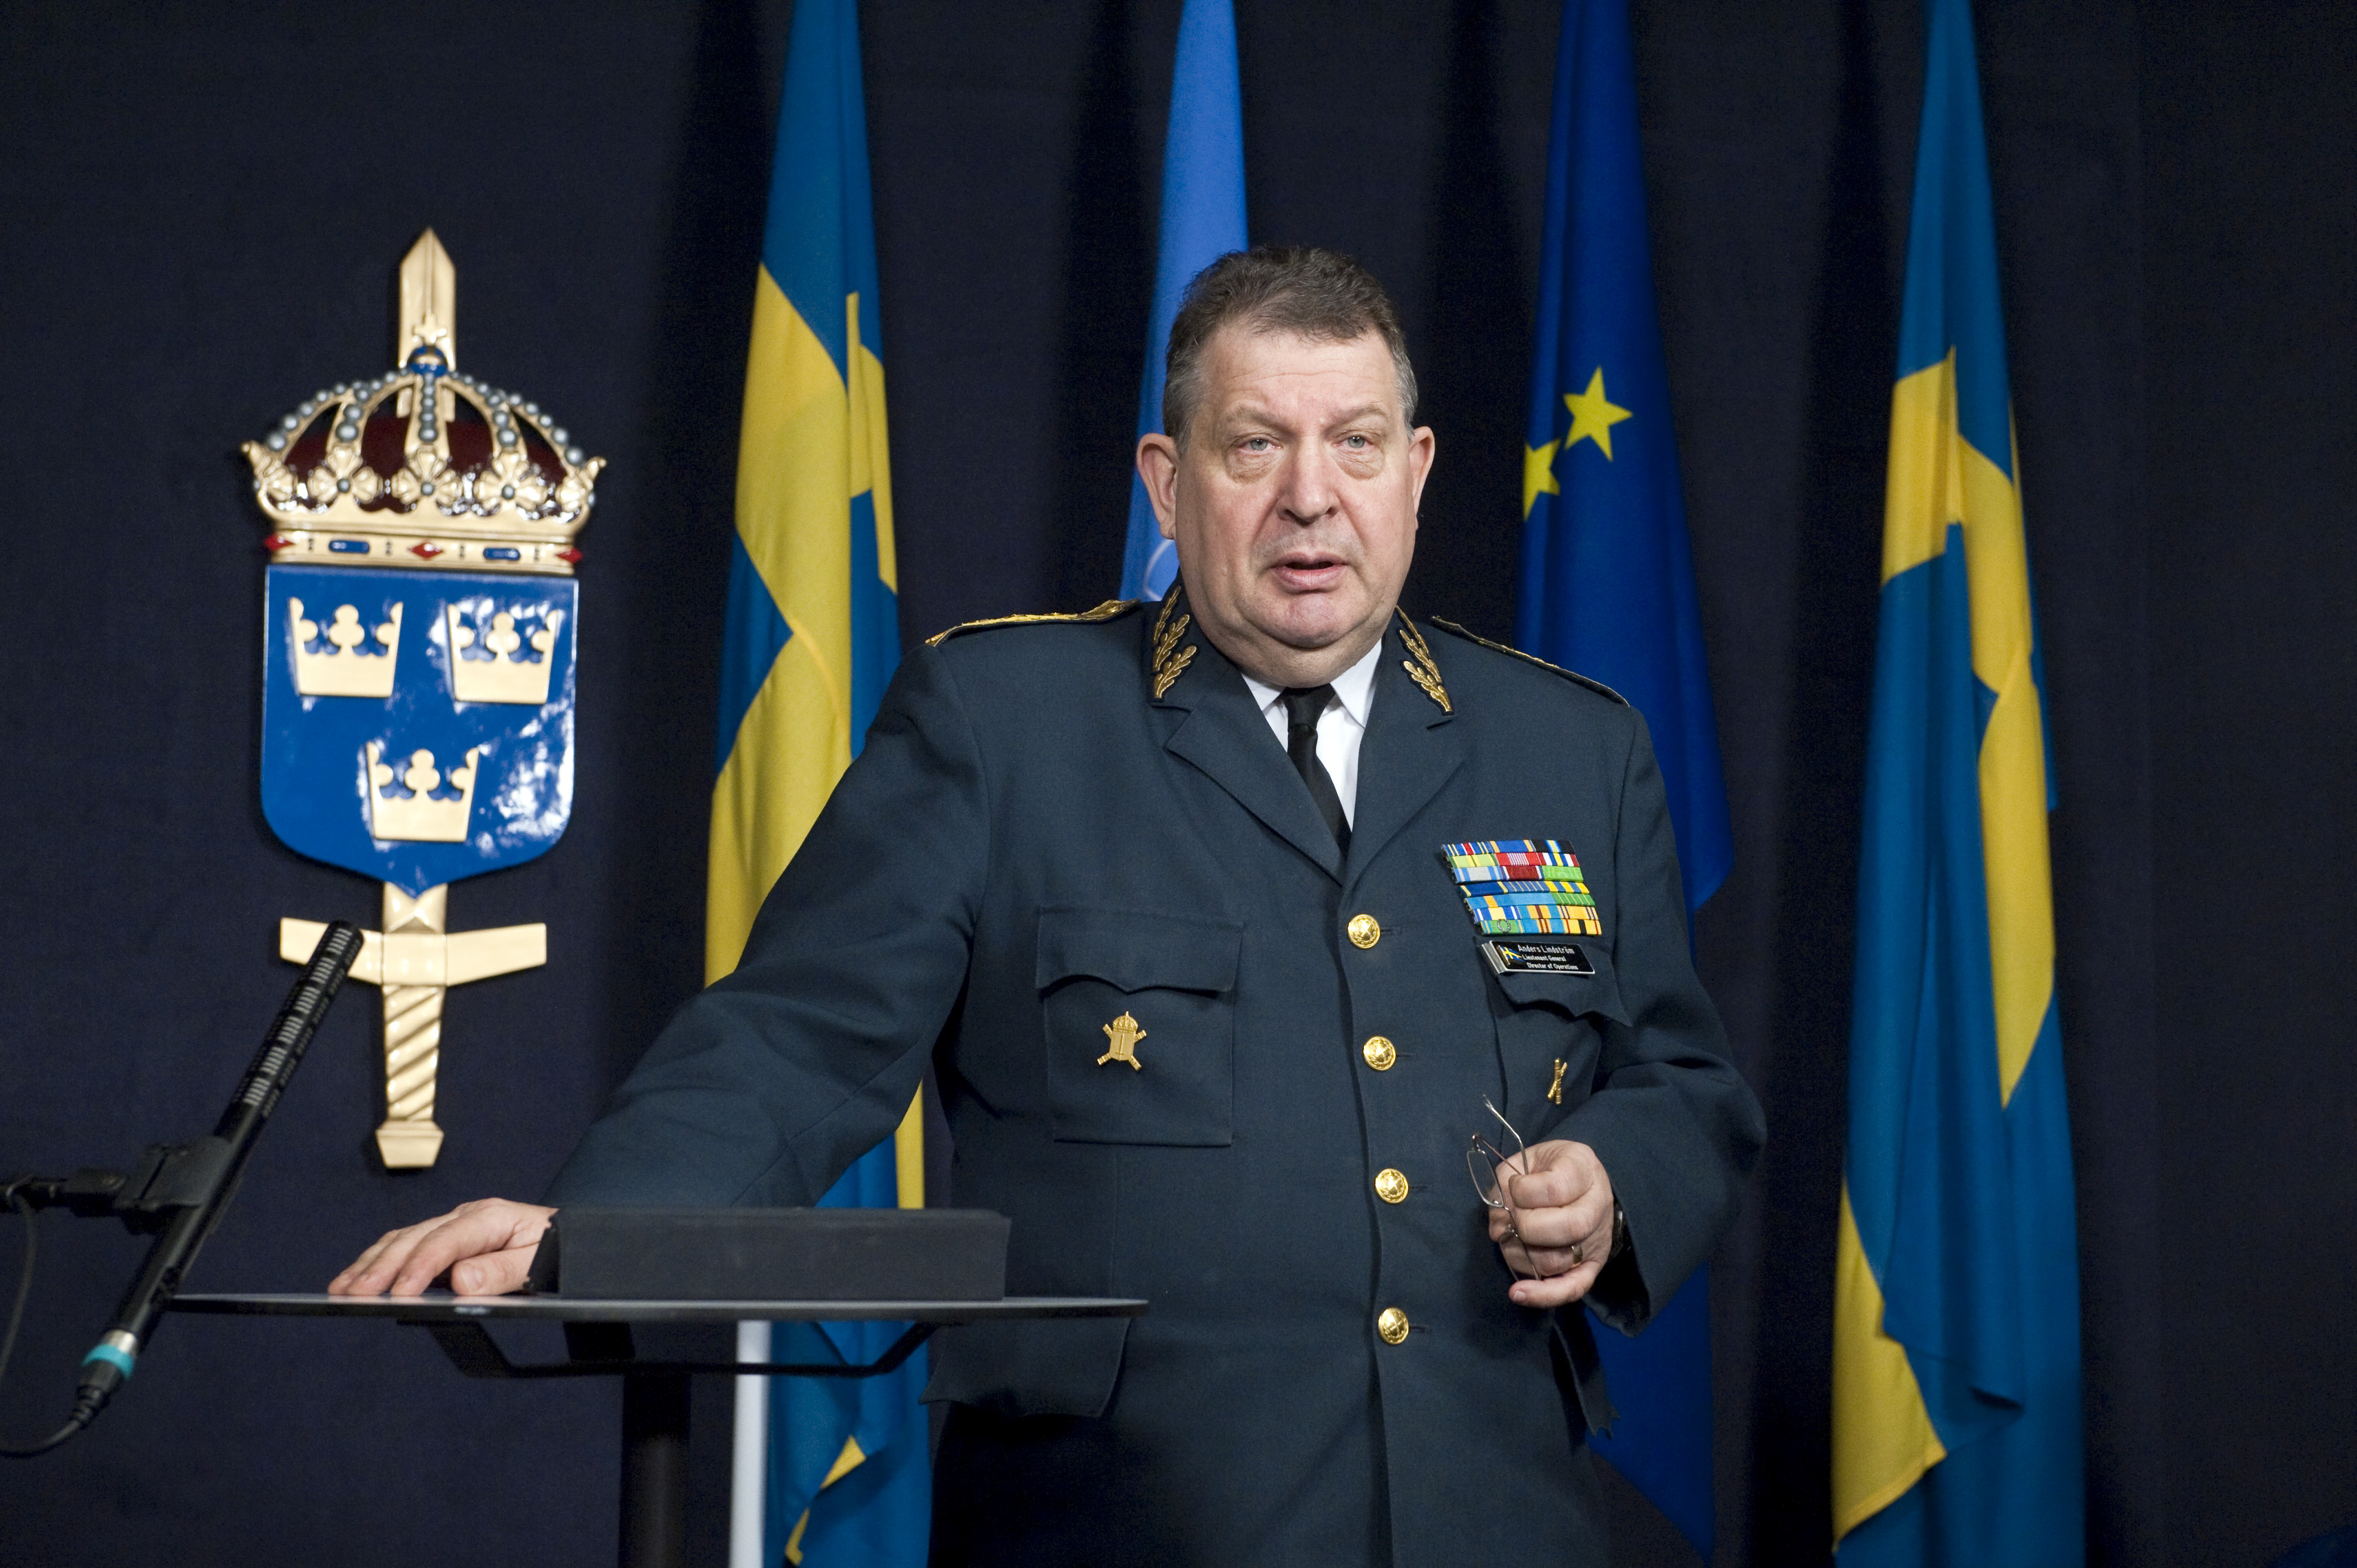 Anders Lindström är generallöjtnant och ansvarig för Sveriges insats i Afghanistan.